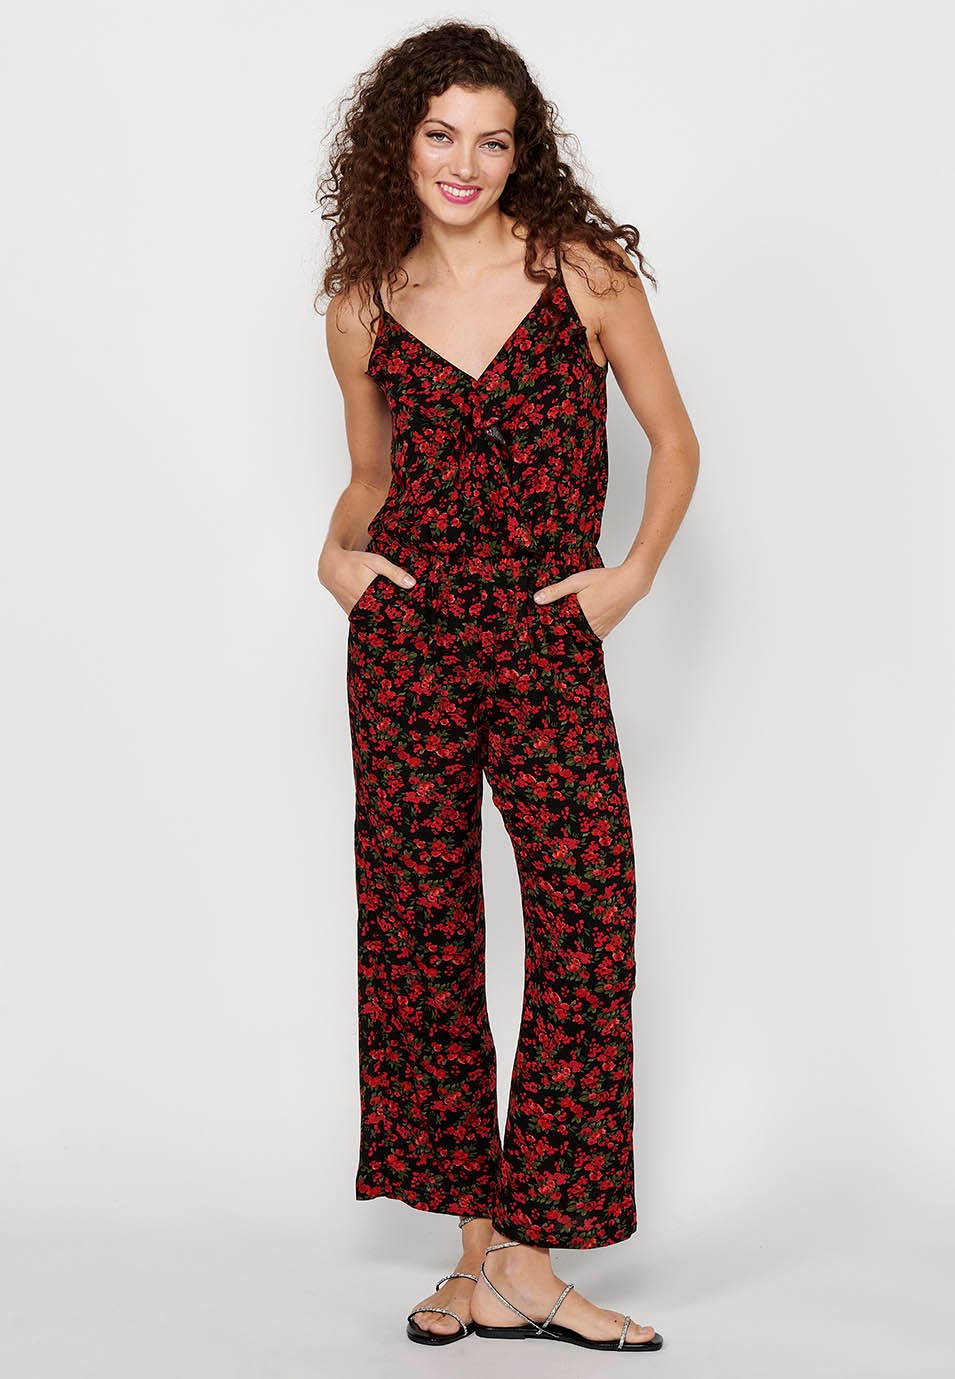 Pantalon habillé long à bretelles réglables avec taille caoutchoutée et imprimé floral rouge pour Femme 2